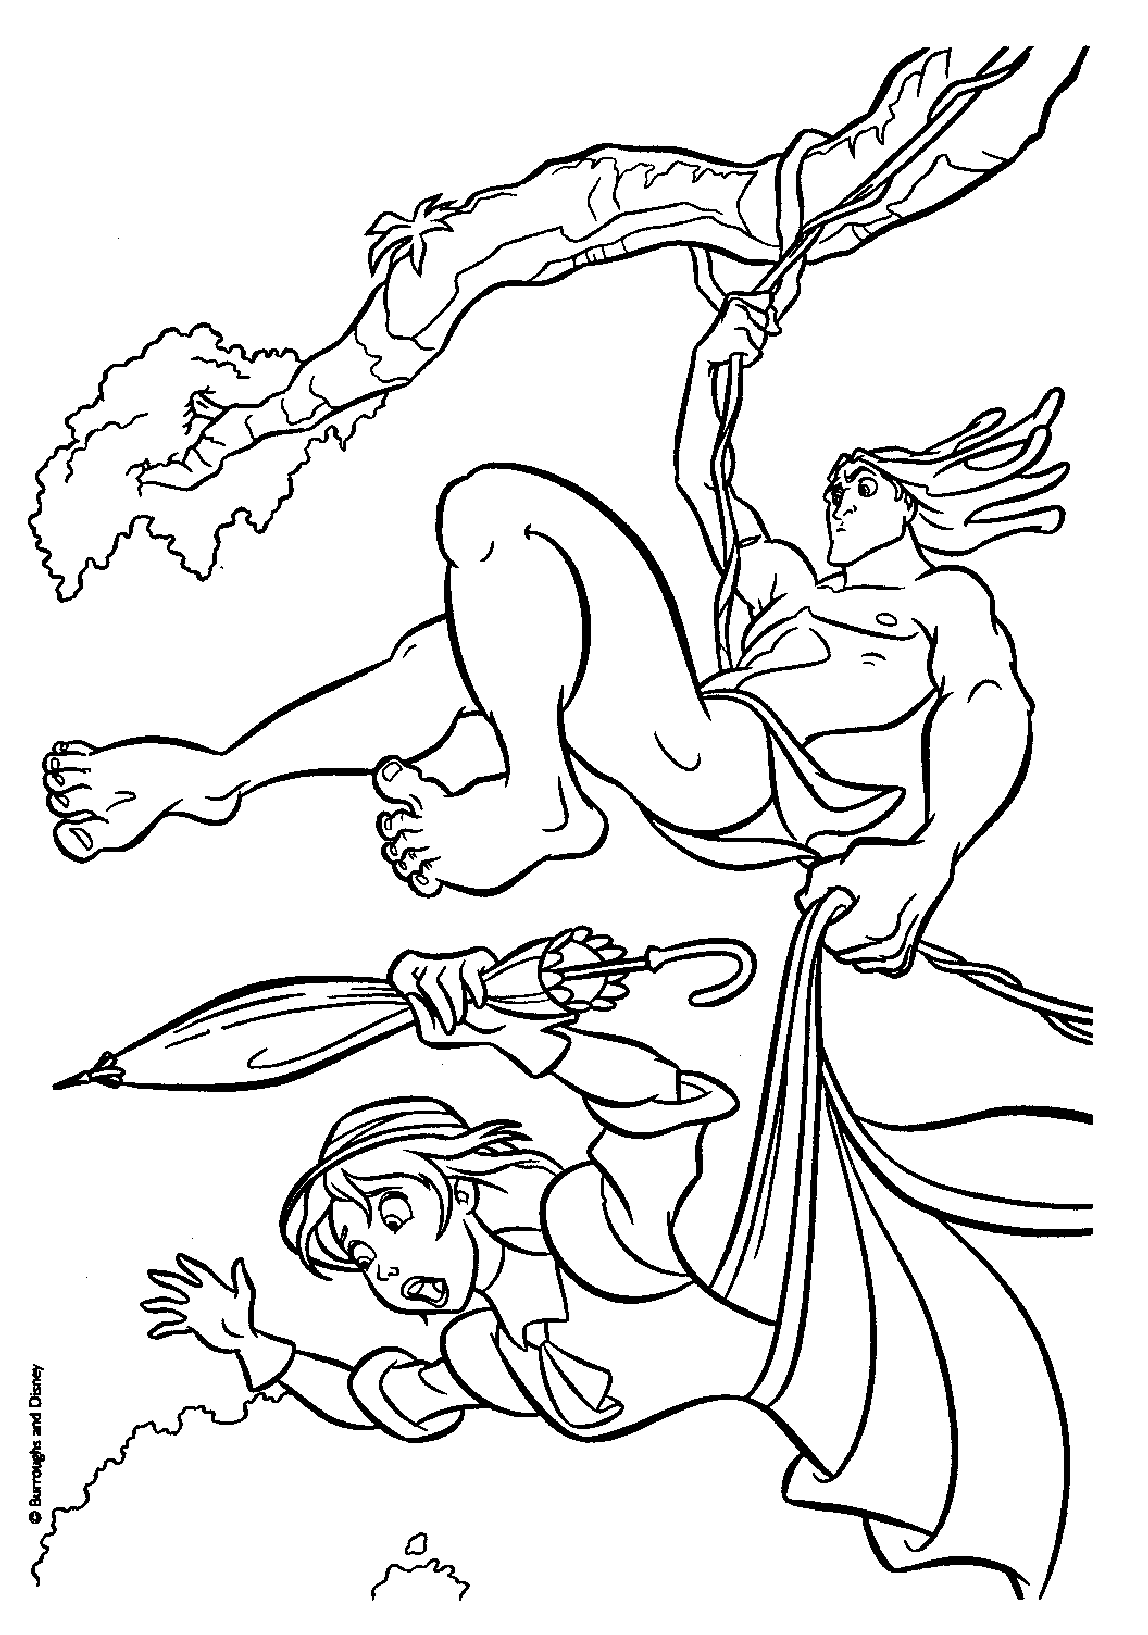 Desenho De Aventuras De Tarzan E Jane Para Colorir â Matring Org